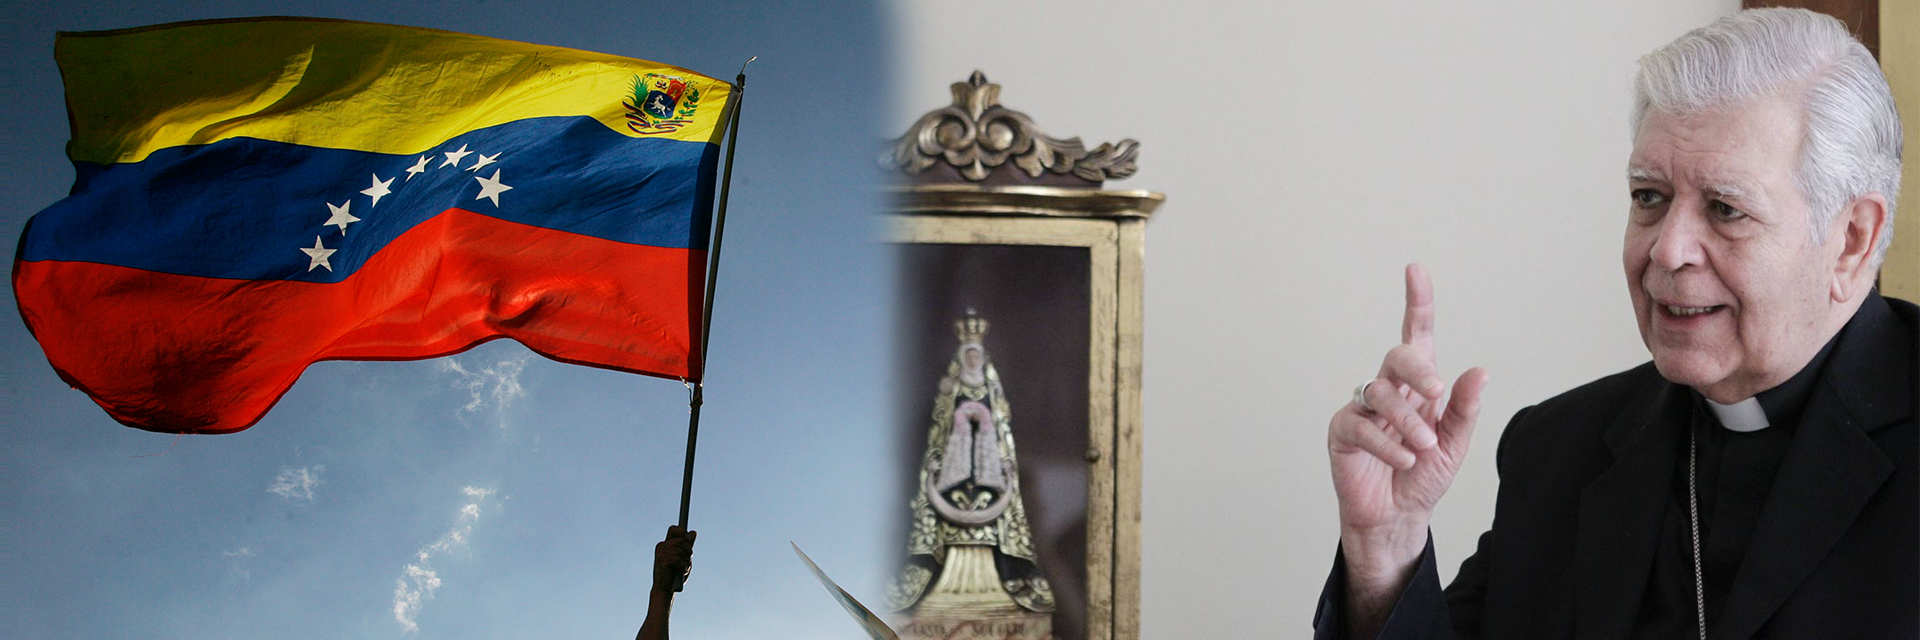 Cardenal Urosa: Ojalá Maduro escuche al Papa y abandone el poder en Venezuela